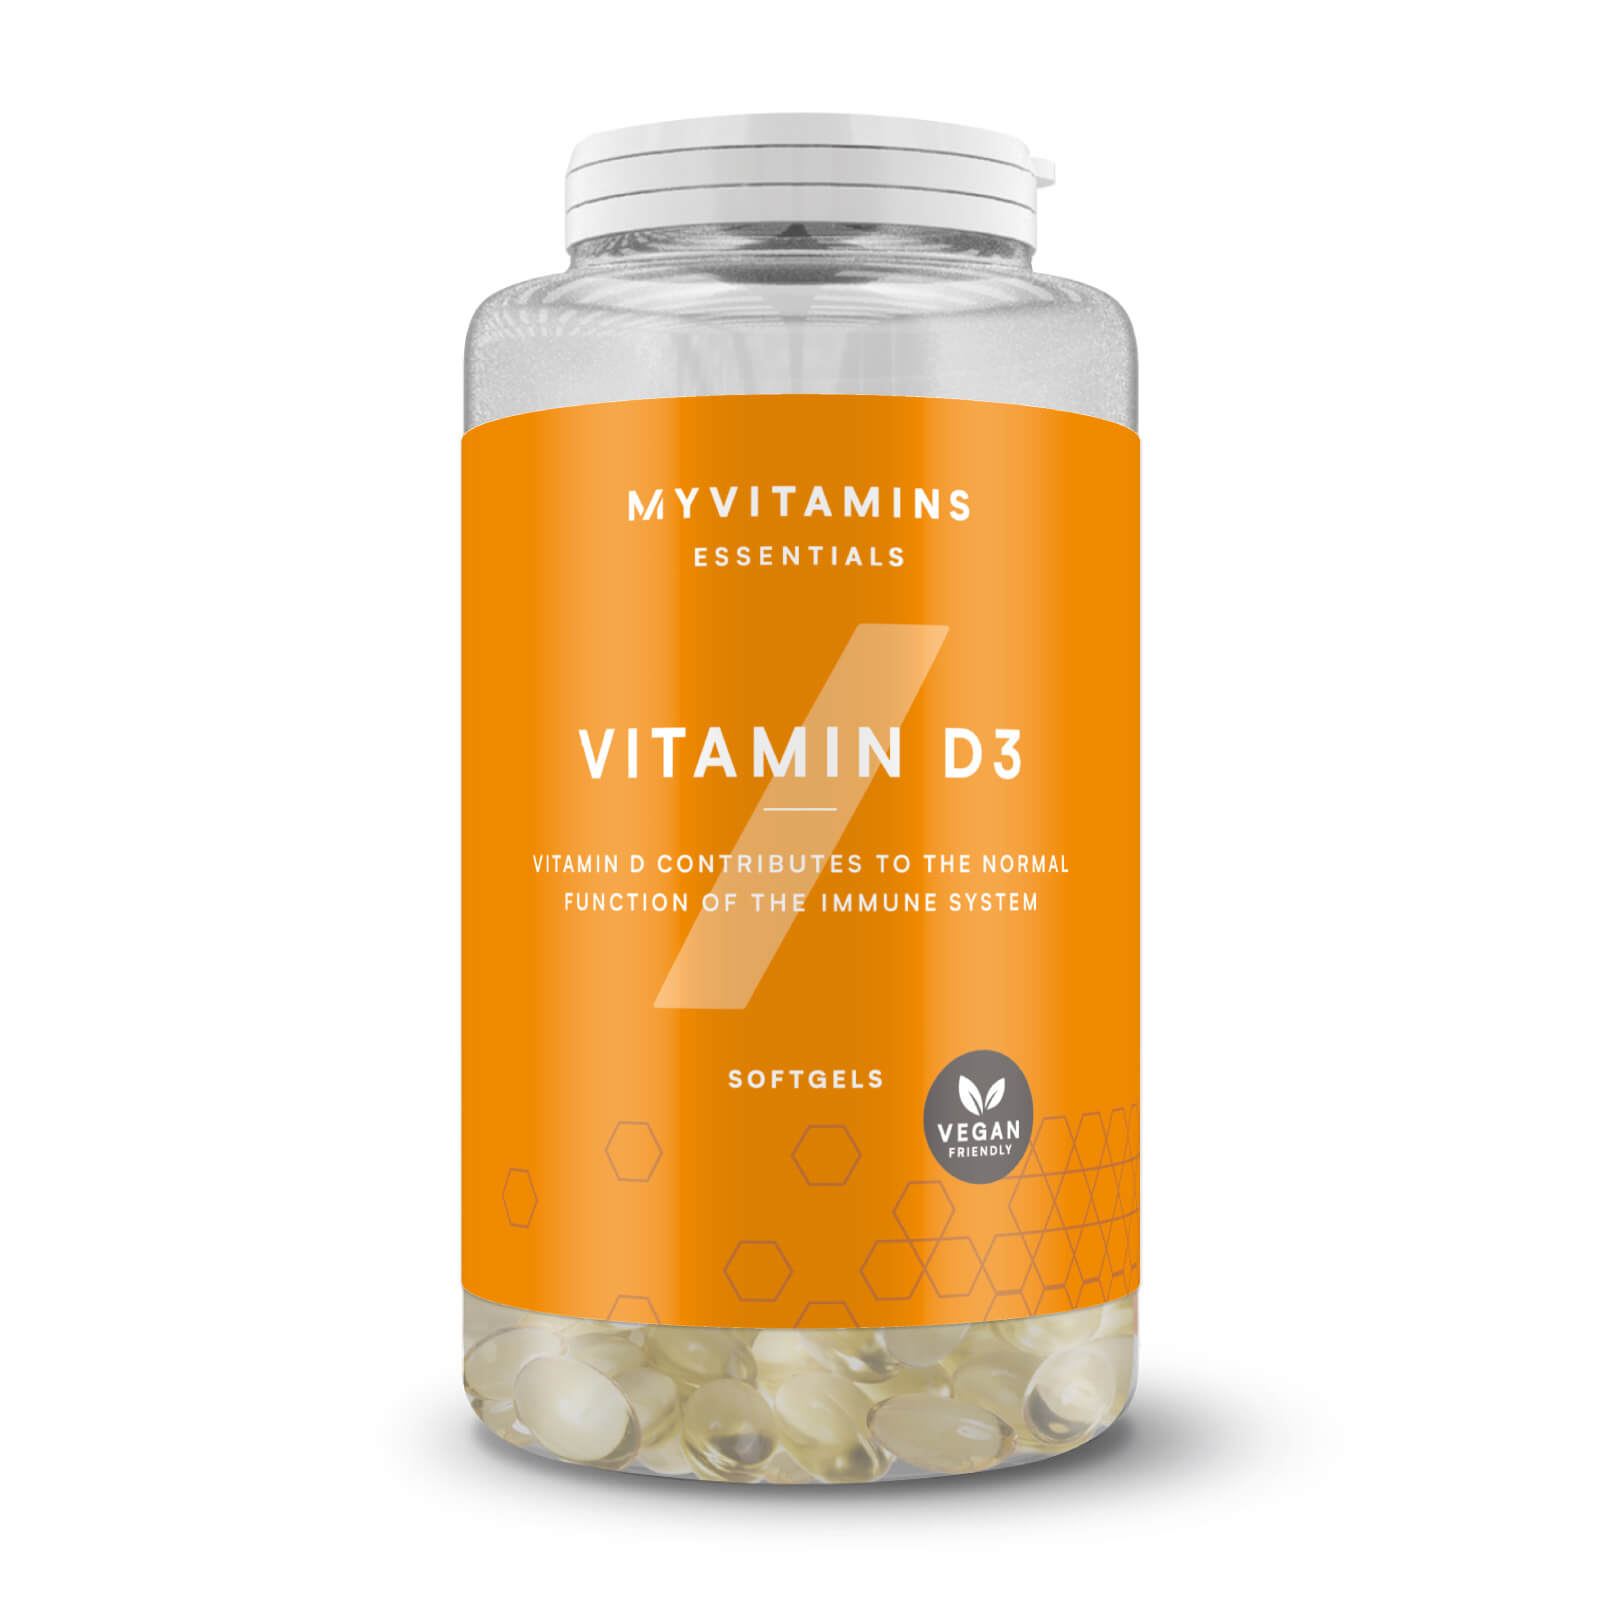 Myvitamins Vitamin D3 - 60Softgels - Vegan